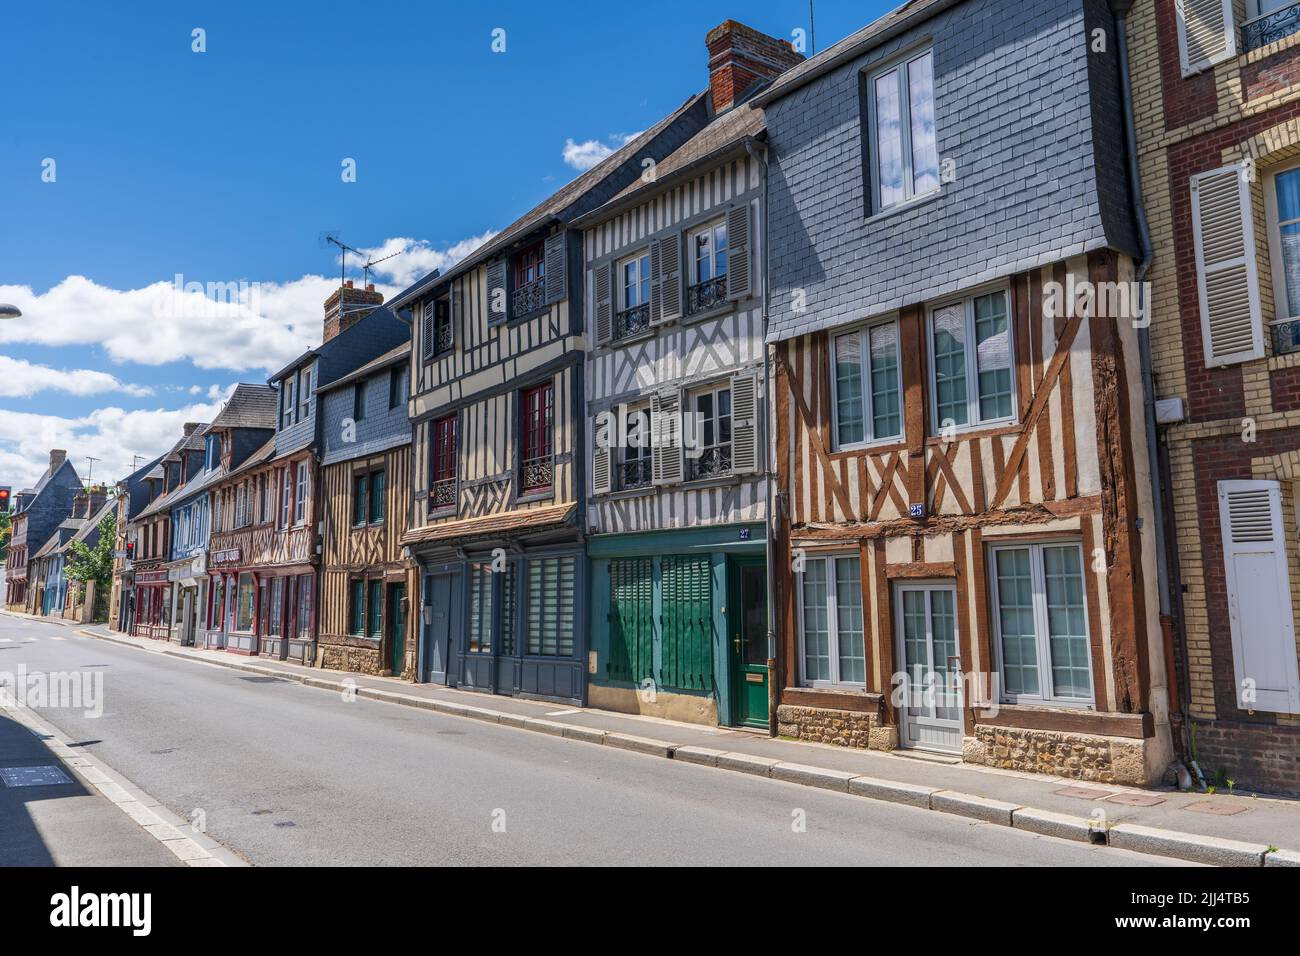 Villaggio bretone con le tipiche abitazioni a traliccio (France) Stock Photo